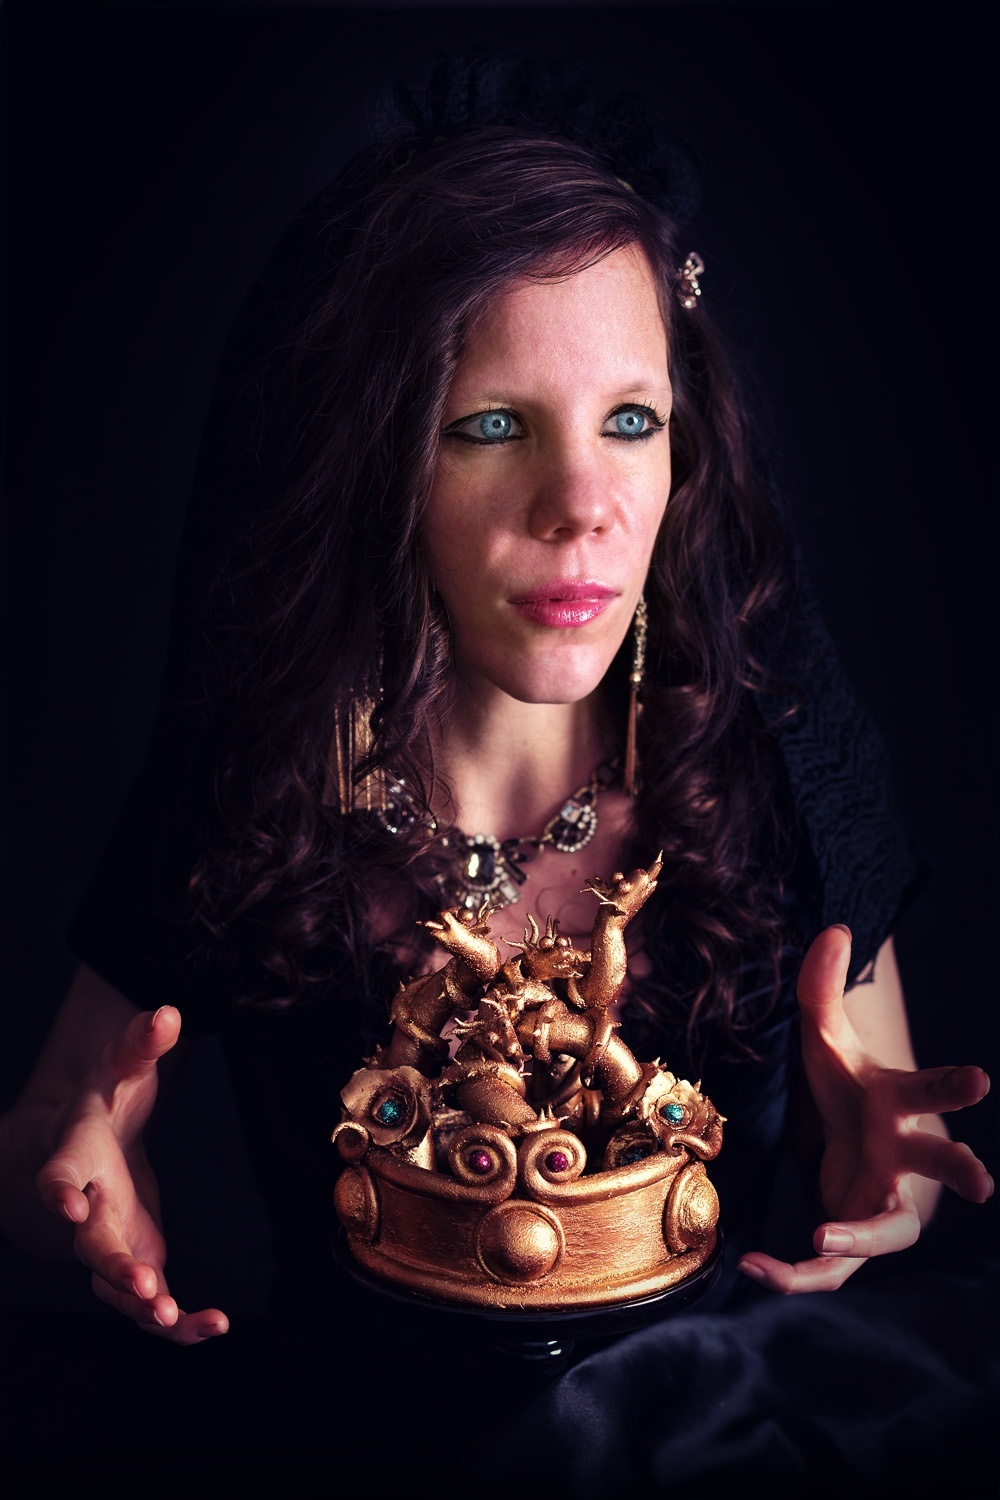 Evil queen - Autoportrait - La chateleine - Studio de creation - Qui a vole les tartes